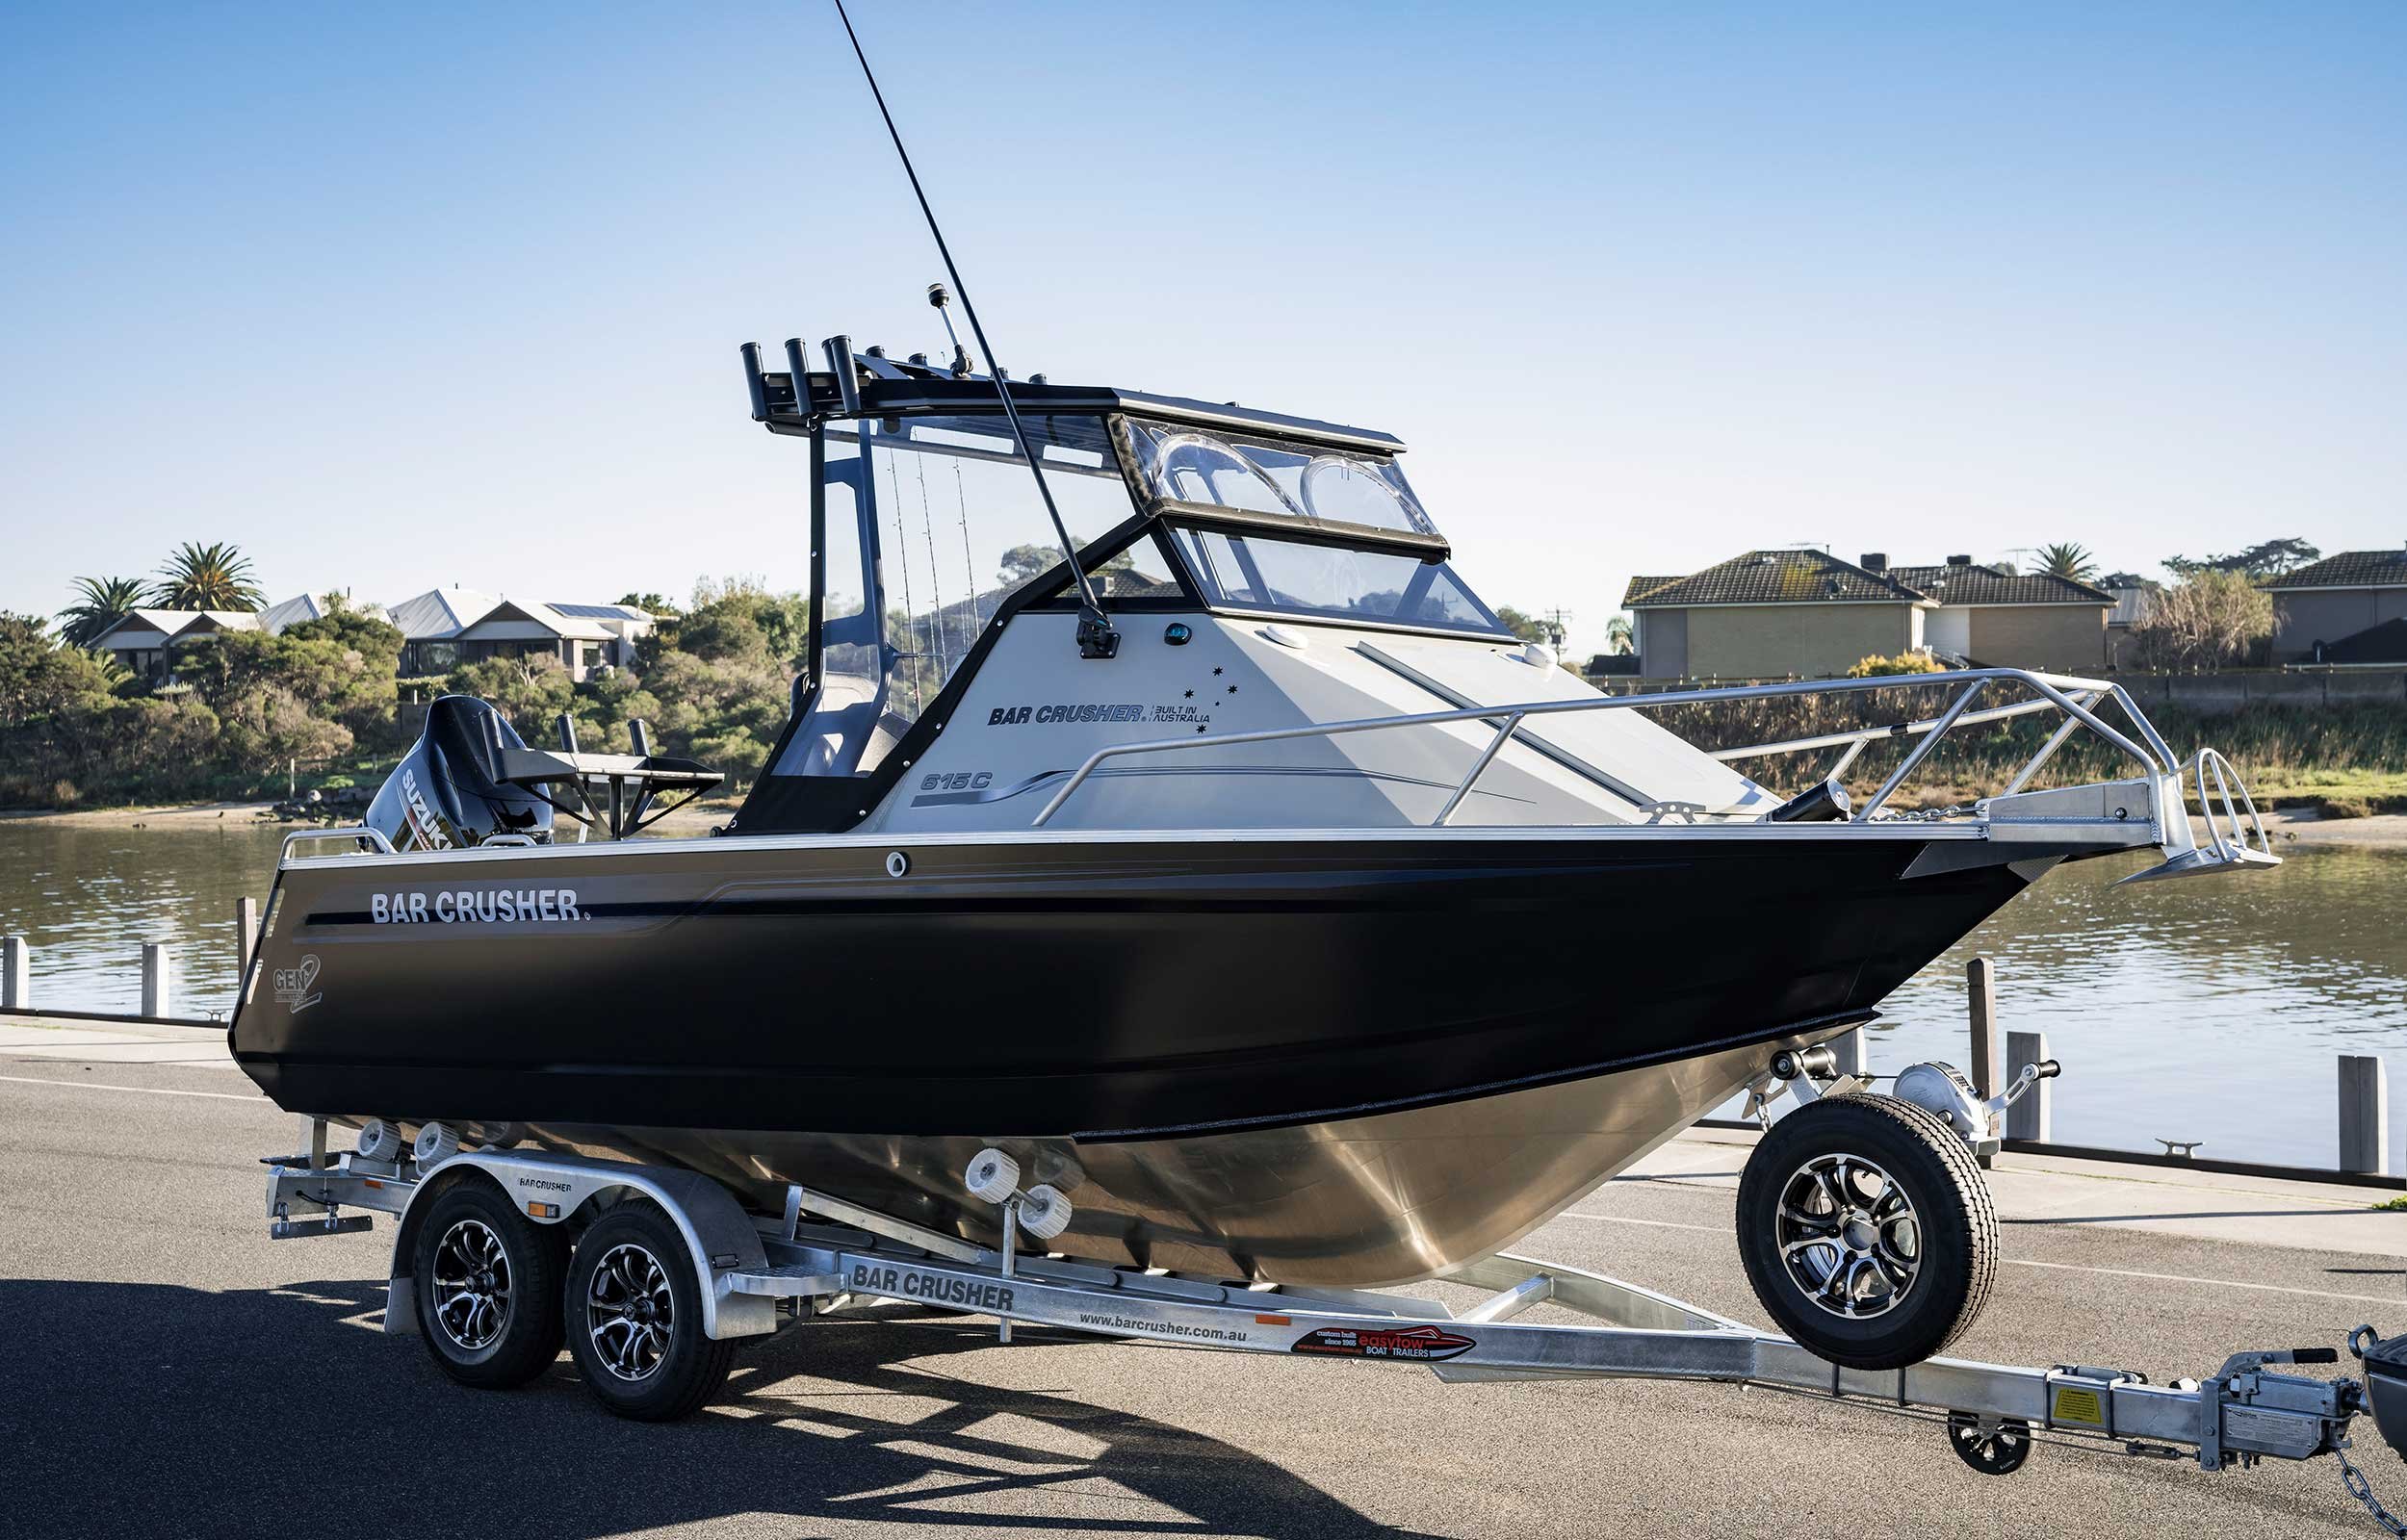 models-bar-crusher-615c-plate-aluminium-fishing-boat-2019-web-1